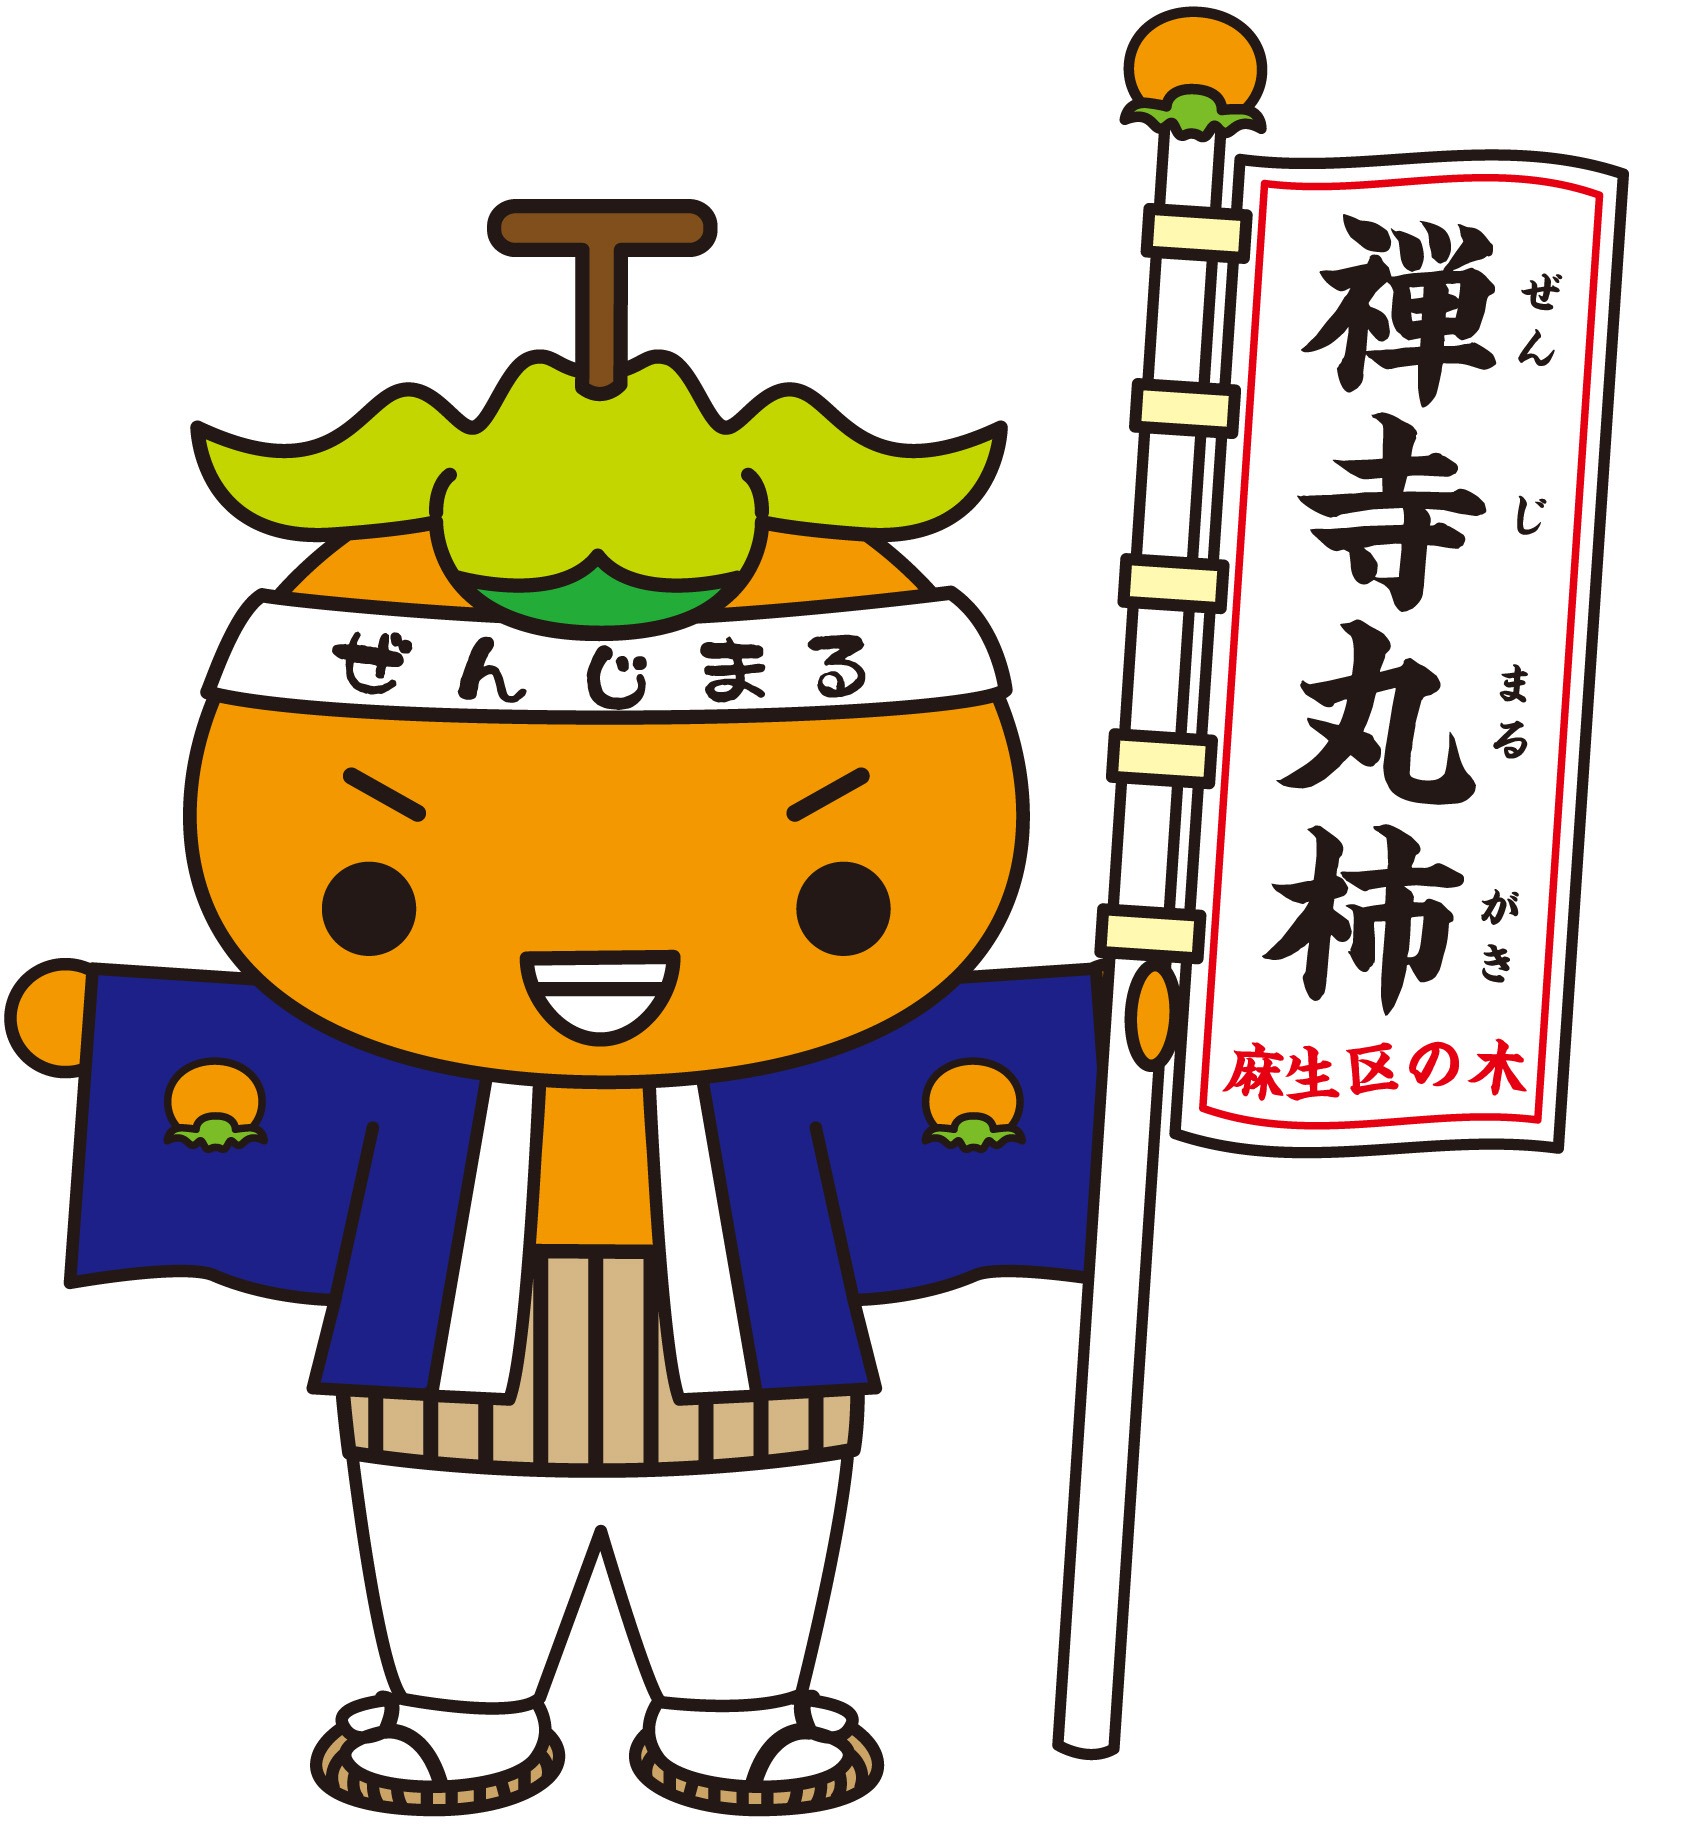 禅寺丸柿キャラクター「かきまるくん」のイラスト